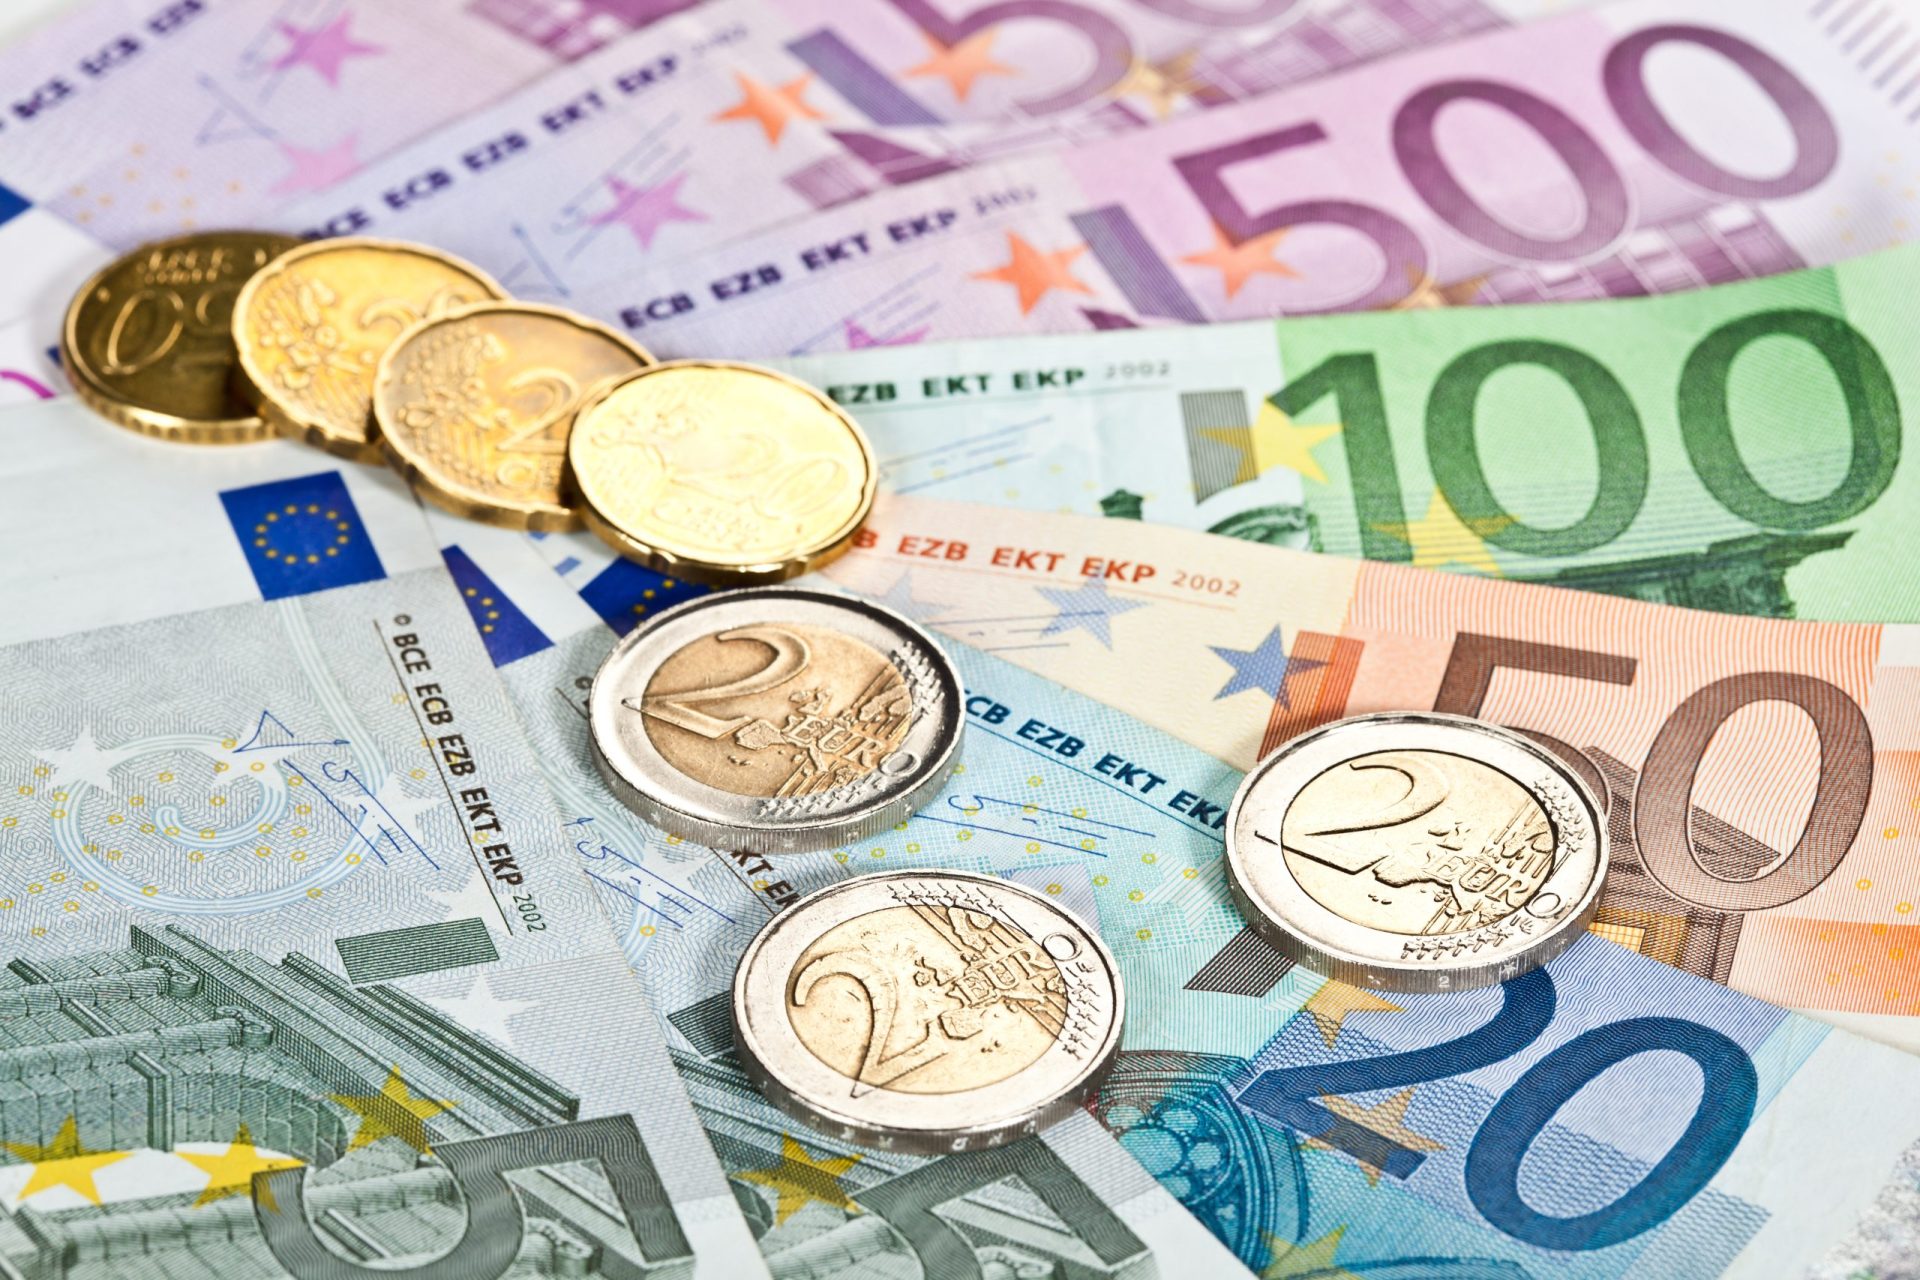 Portugal colocou 1.000 milhões de euros em OT a taxa de juro mais baixa